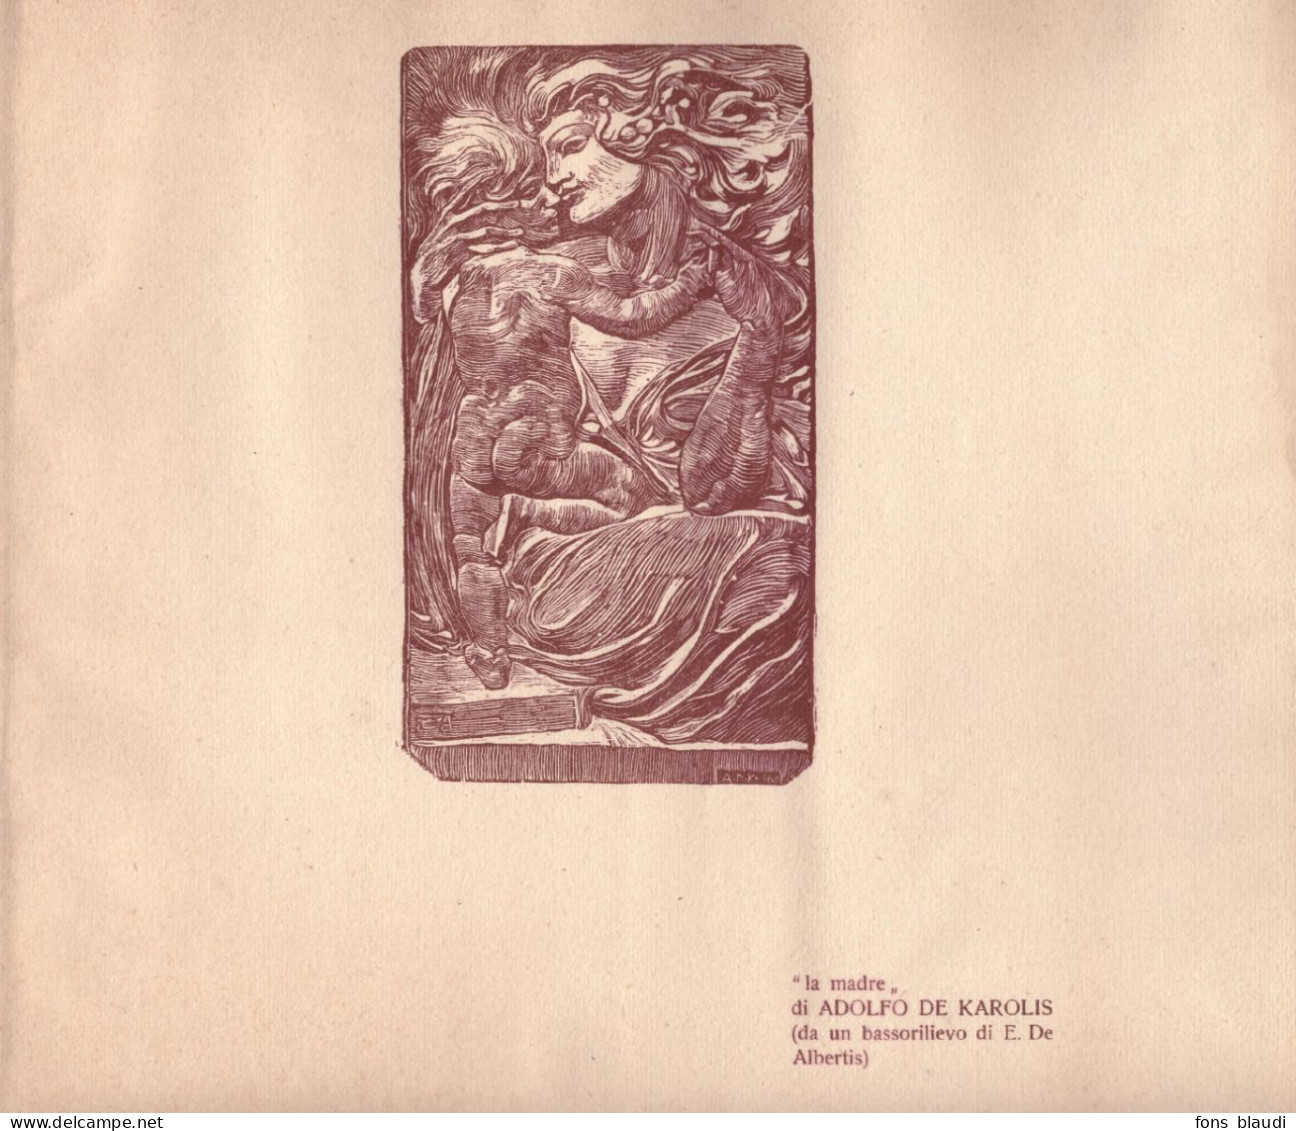 1912 - Xylographie Originale - Adolfo De Karolis (Montefiore Dell'Aso 1874 - Rome 1928) - La Madre - Estampas & Grabados